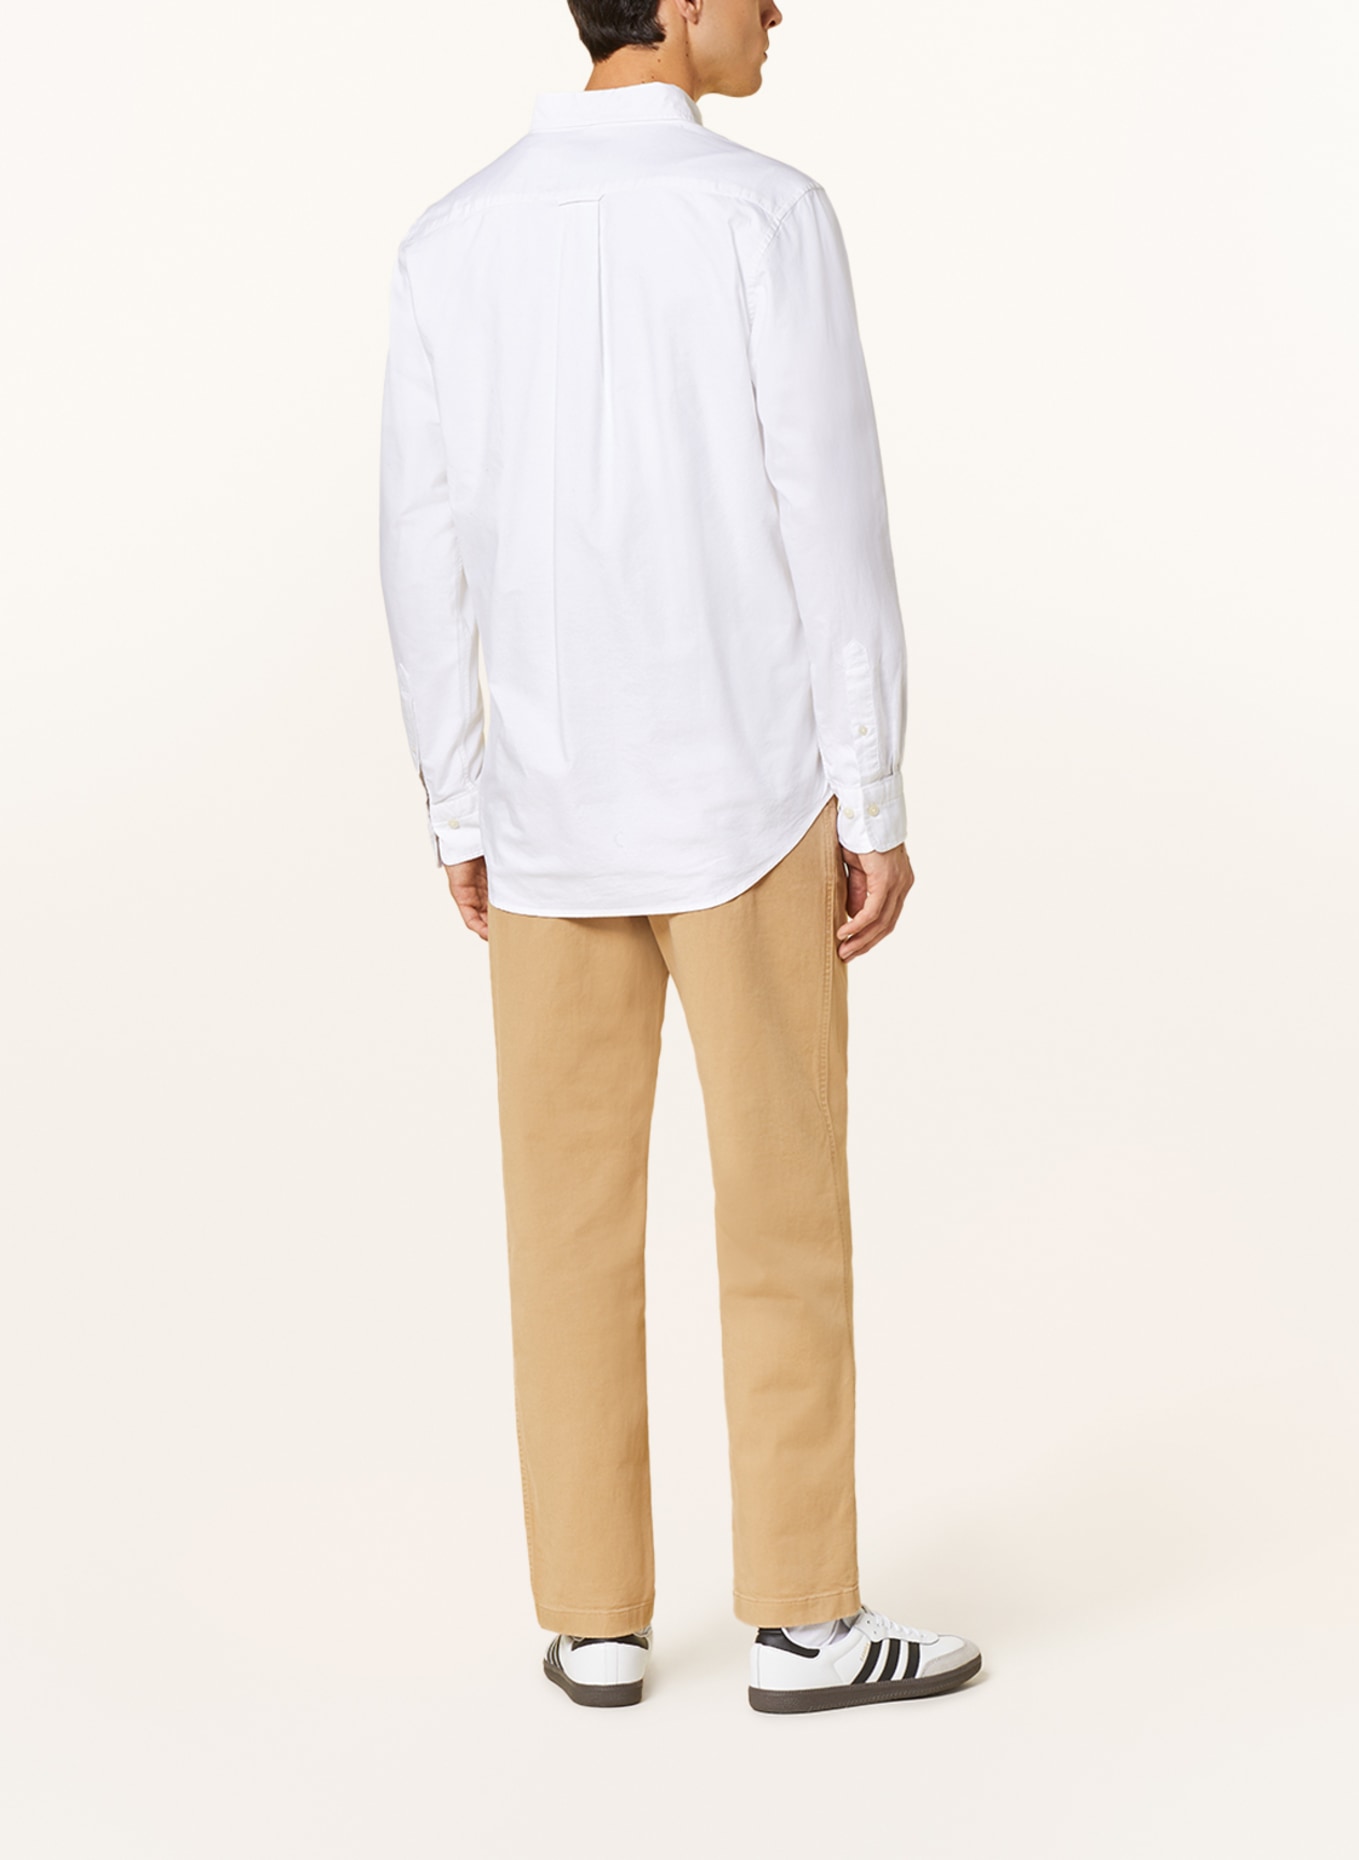 GANT Oxford shirt regular fit, Color: WHITE (Image 3)